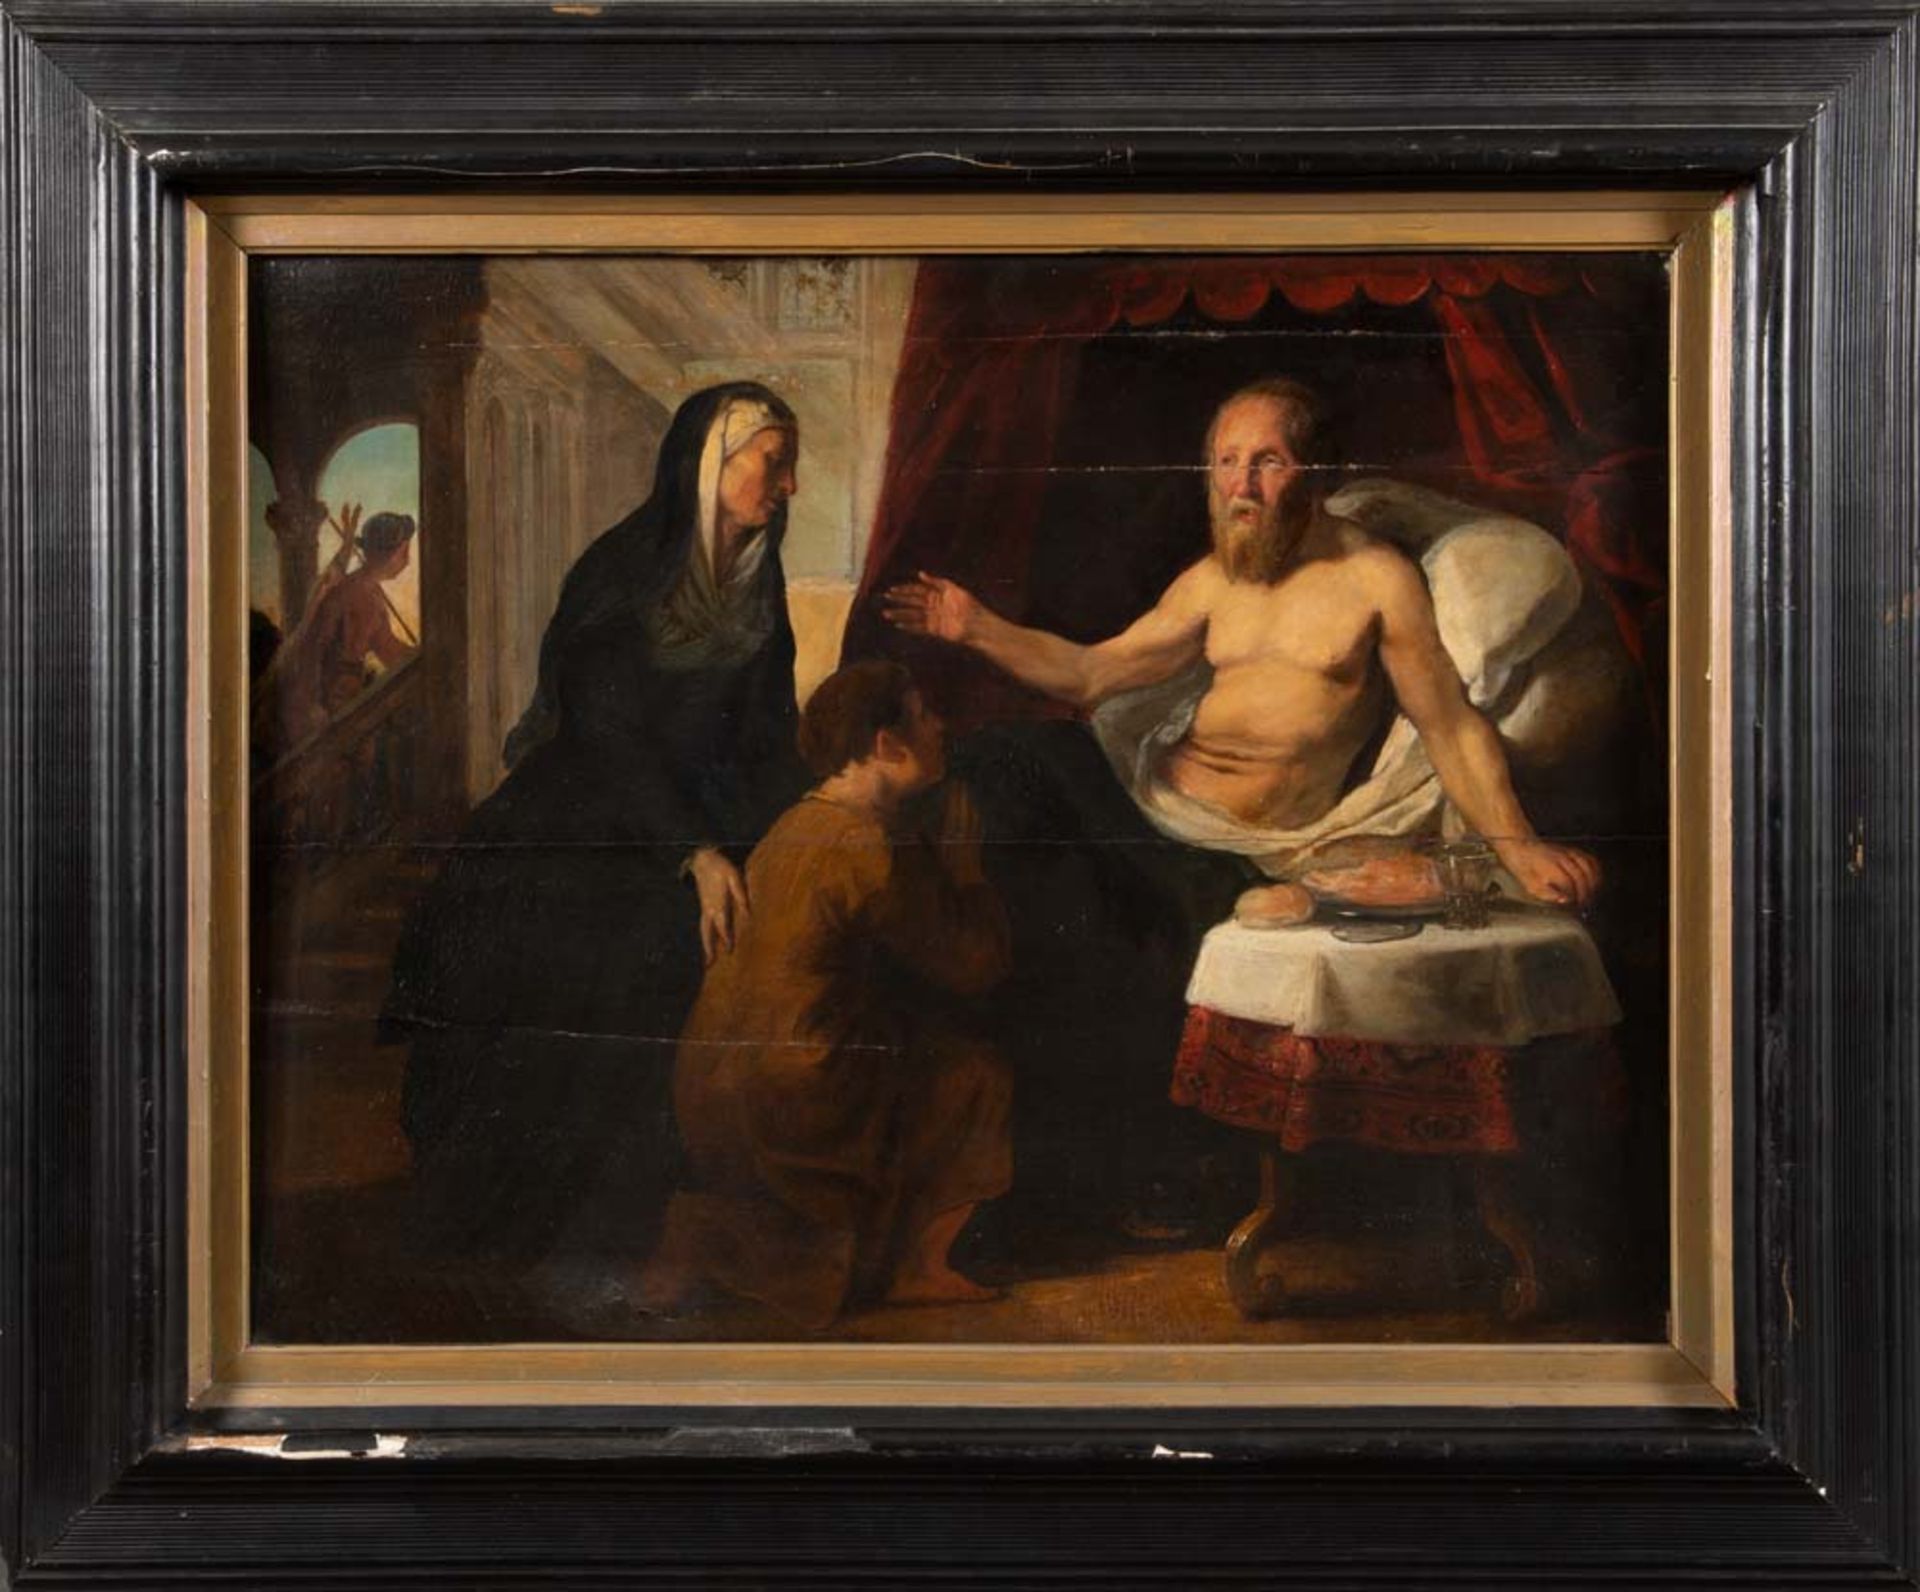 Maler des wohl 17. Jhs. Hl. Paulus mit Gläubigen. Öl/Holz, gerahmt, 49 x 63,5 cm. (besch.)